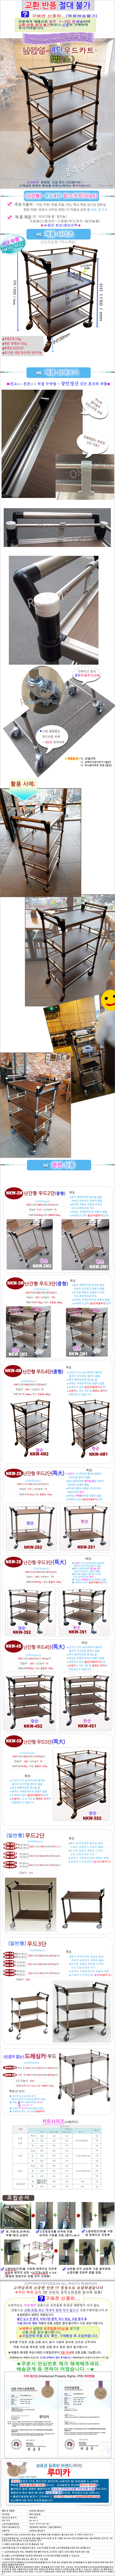 cart-wood-nangan-4-new_115635.jpg